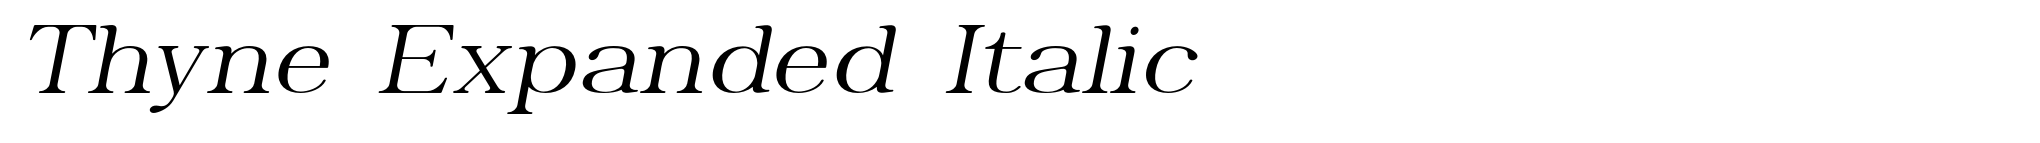 Thyne Expanded Italic image